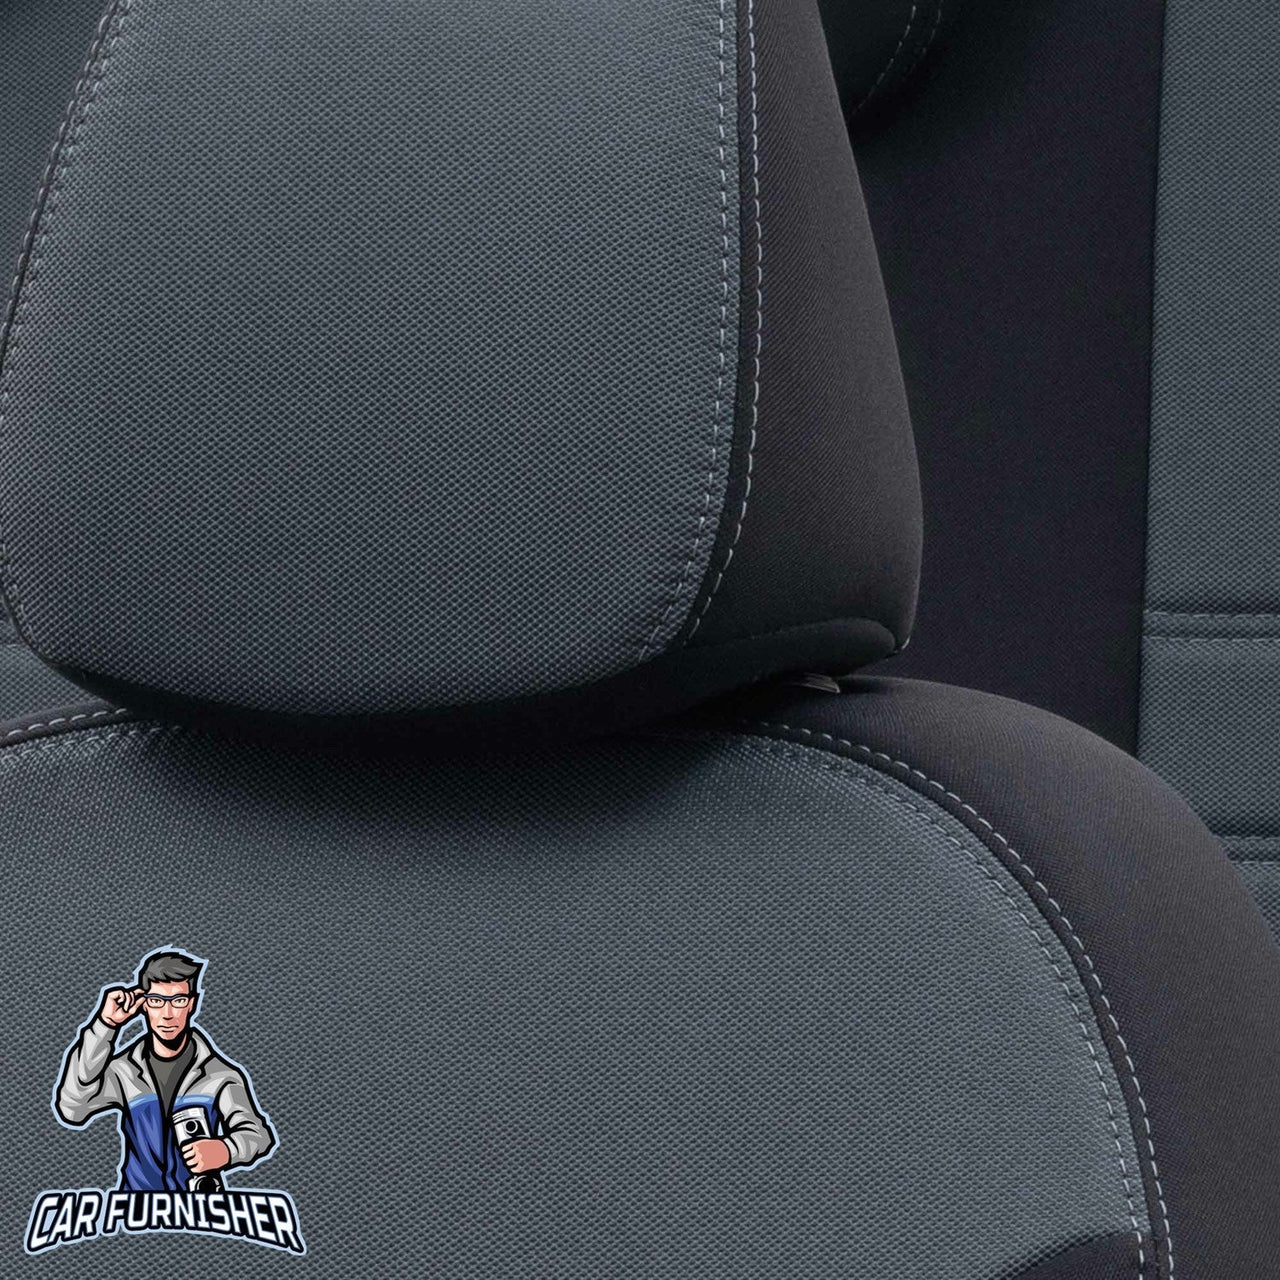 Skoda Citigo Seat Covers Original Jacquard Design Smoked Black Jacquard Fabric